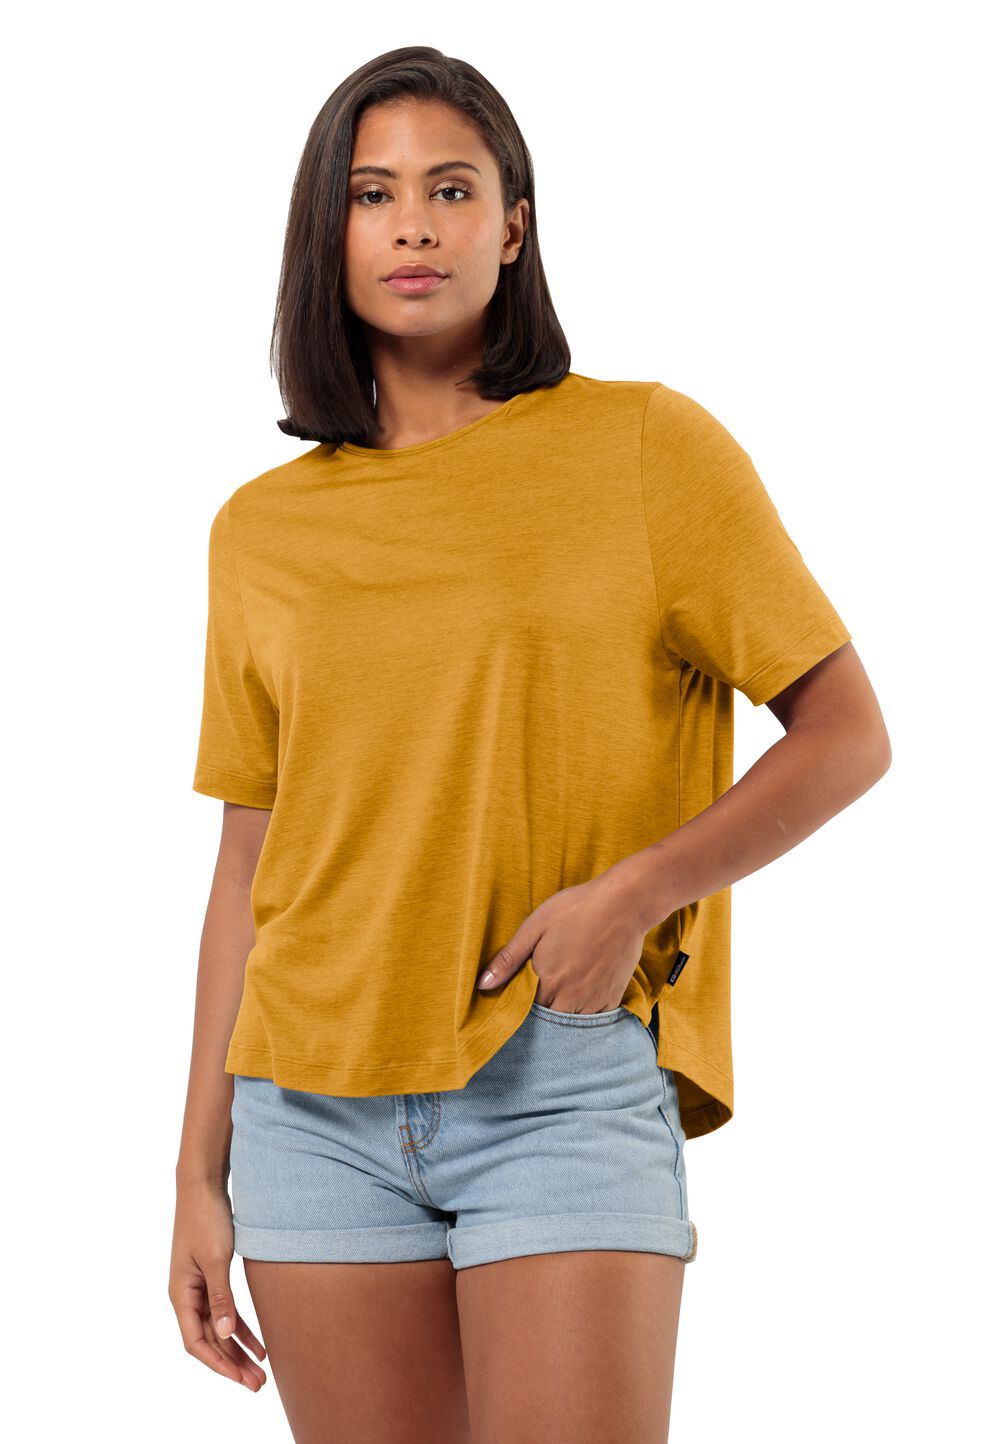 Jack Wolfskin Travel T-Shirt Women Functioneel shirt Dames M bruin curry